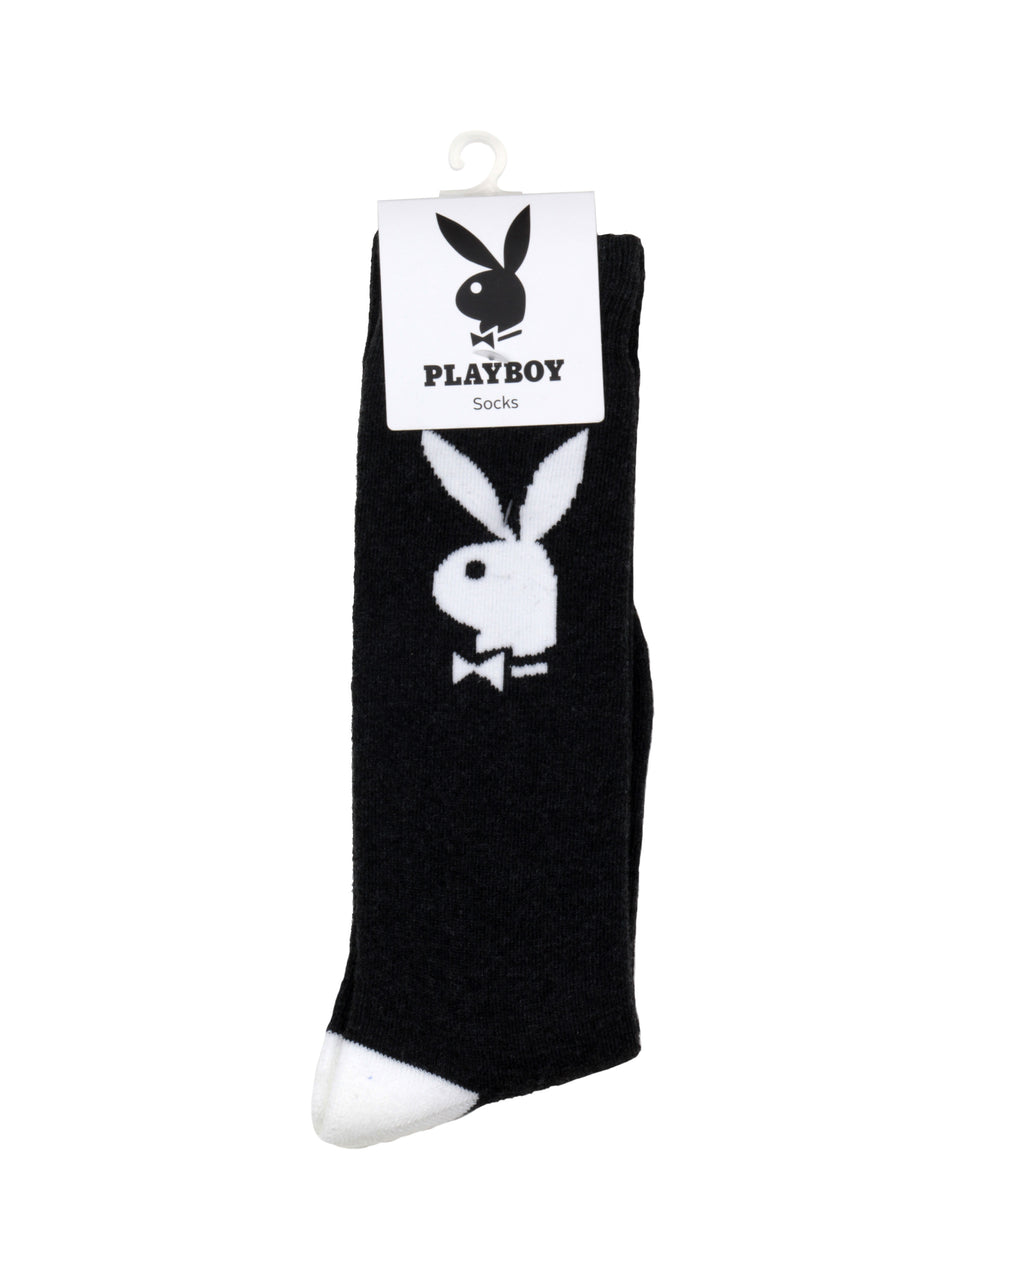 Playboy Socks